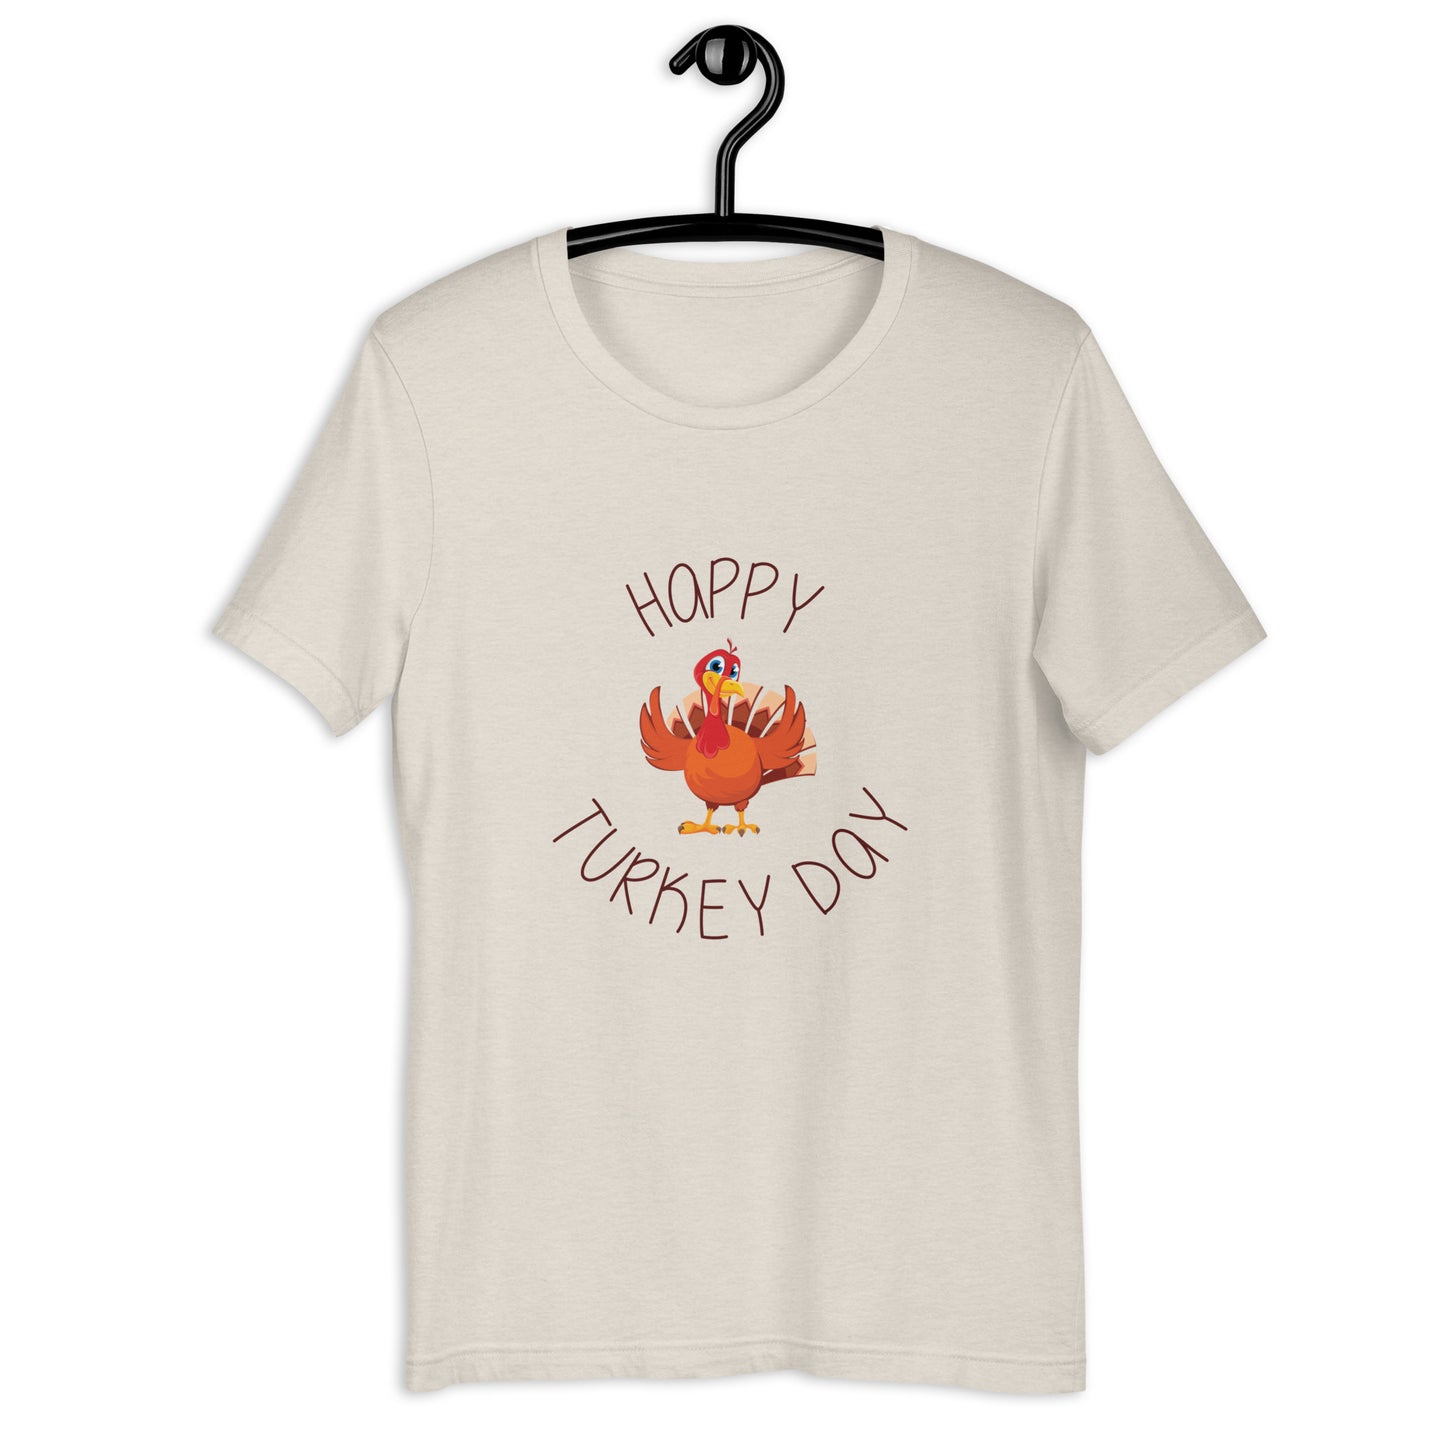 Happy Turkey Day Unisex T-shirt